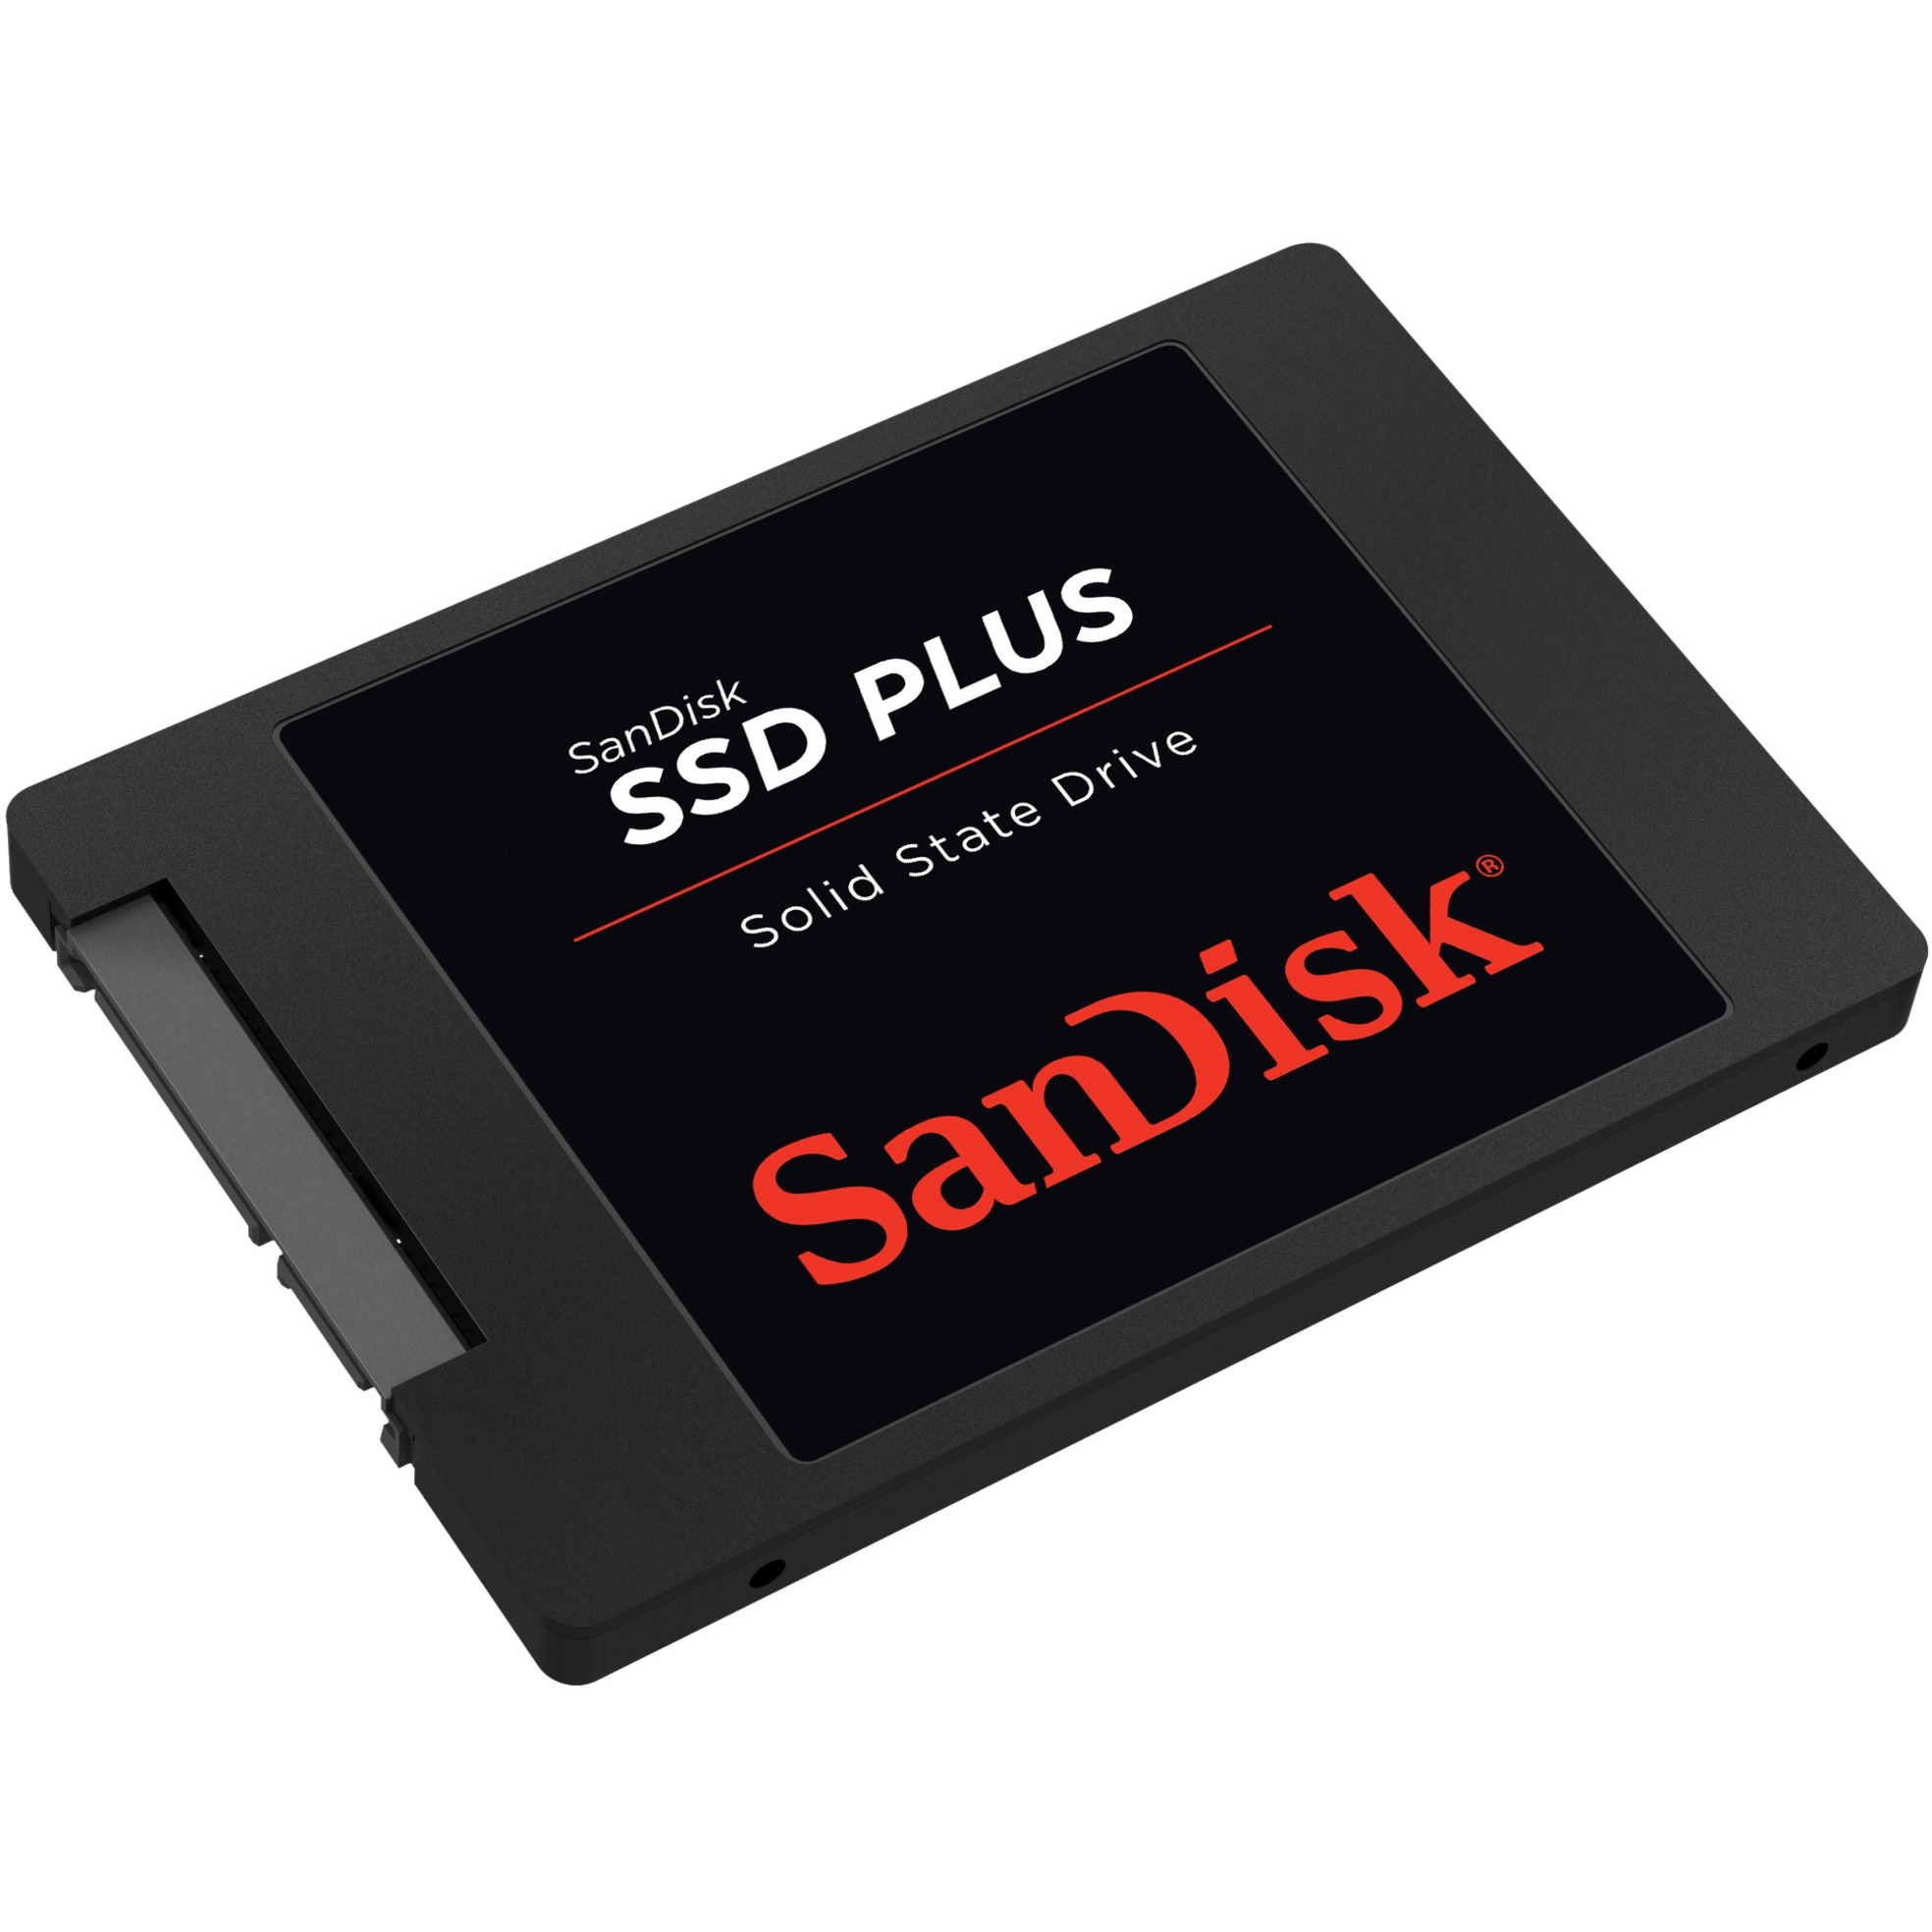 Image of Alternate - SSD Plus 2 TB online einkaufen bei Alternate